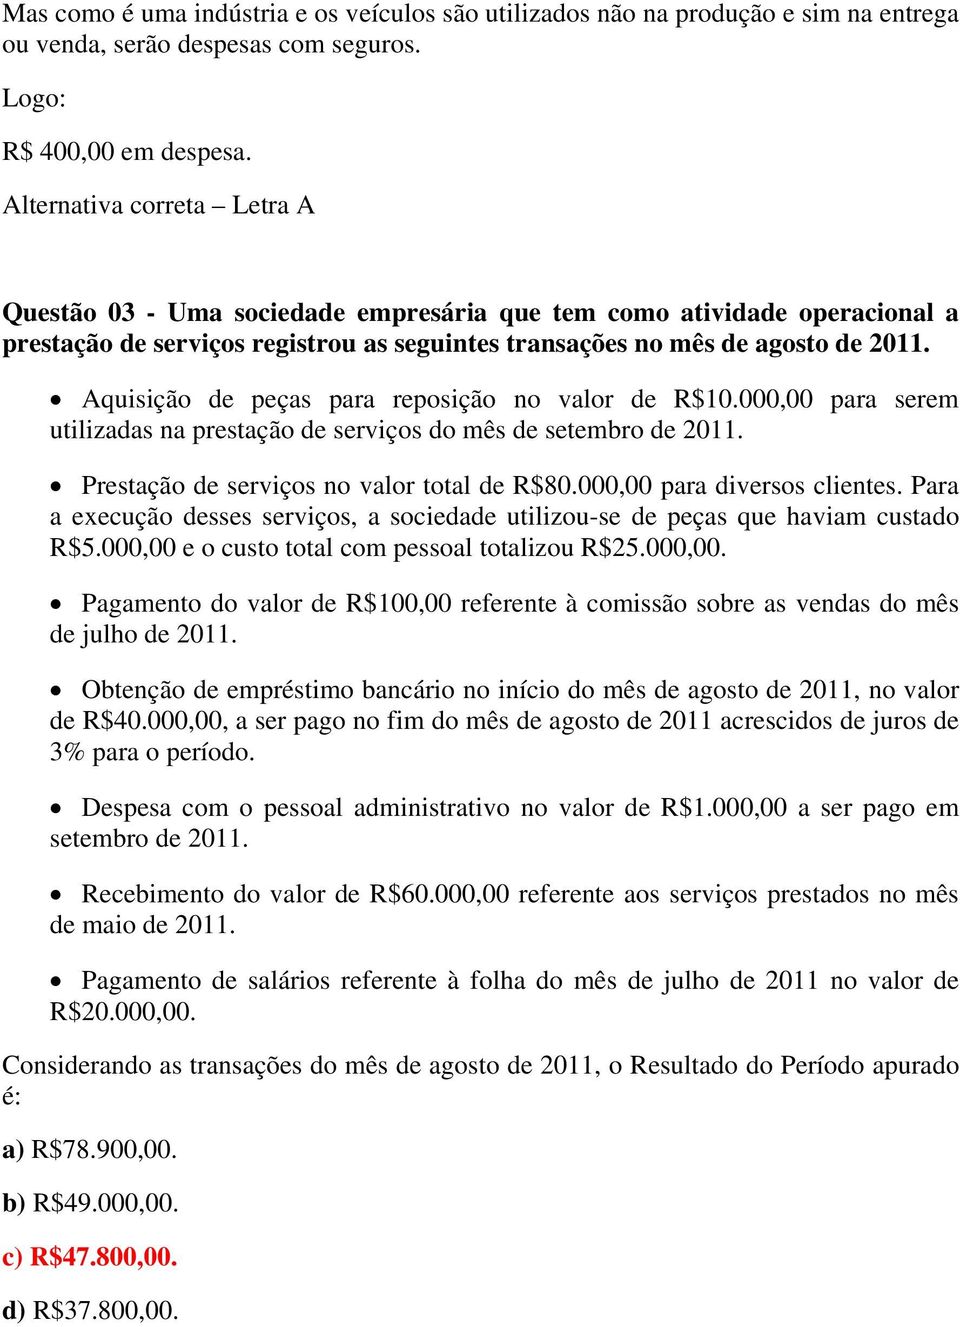 Aquisição de peças para reposição no valor de R$10.000,00 para serem utilizadas na prestação de serviços do mês de setembro de 2011. Prestação de serviços no valor total de R$80.